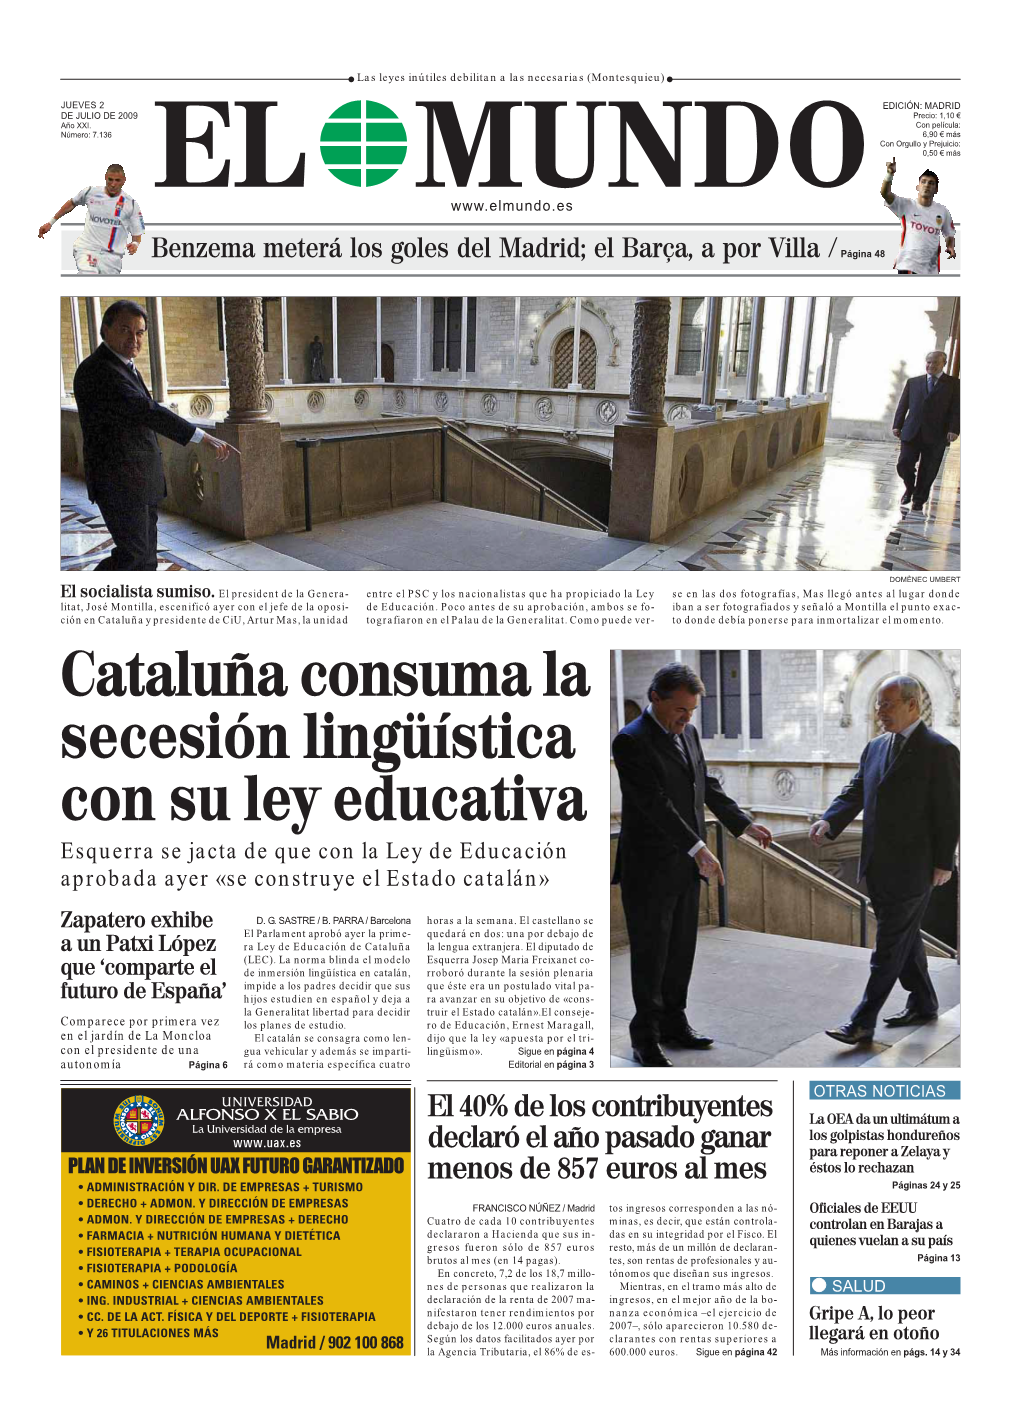 Cataluña Consuma La Secesión Lingüística Con Su Ley Educativa Esquerra Se Jacta De Que Con La Ley De Educación Aprobada Ayer «Se Construye El Estado Catalán»